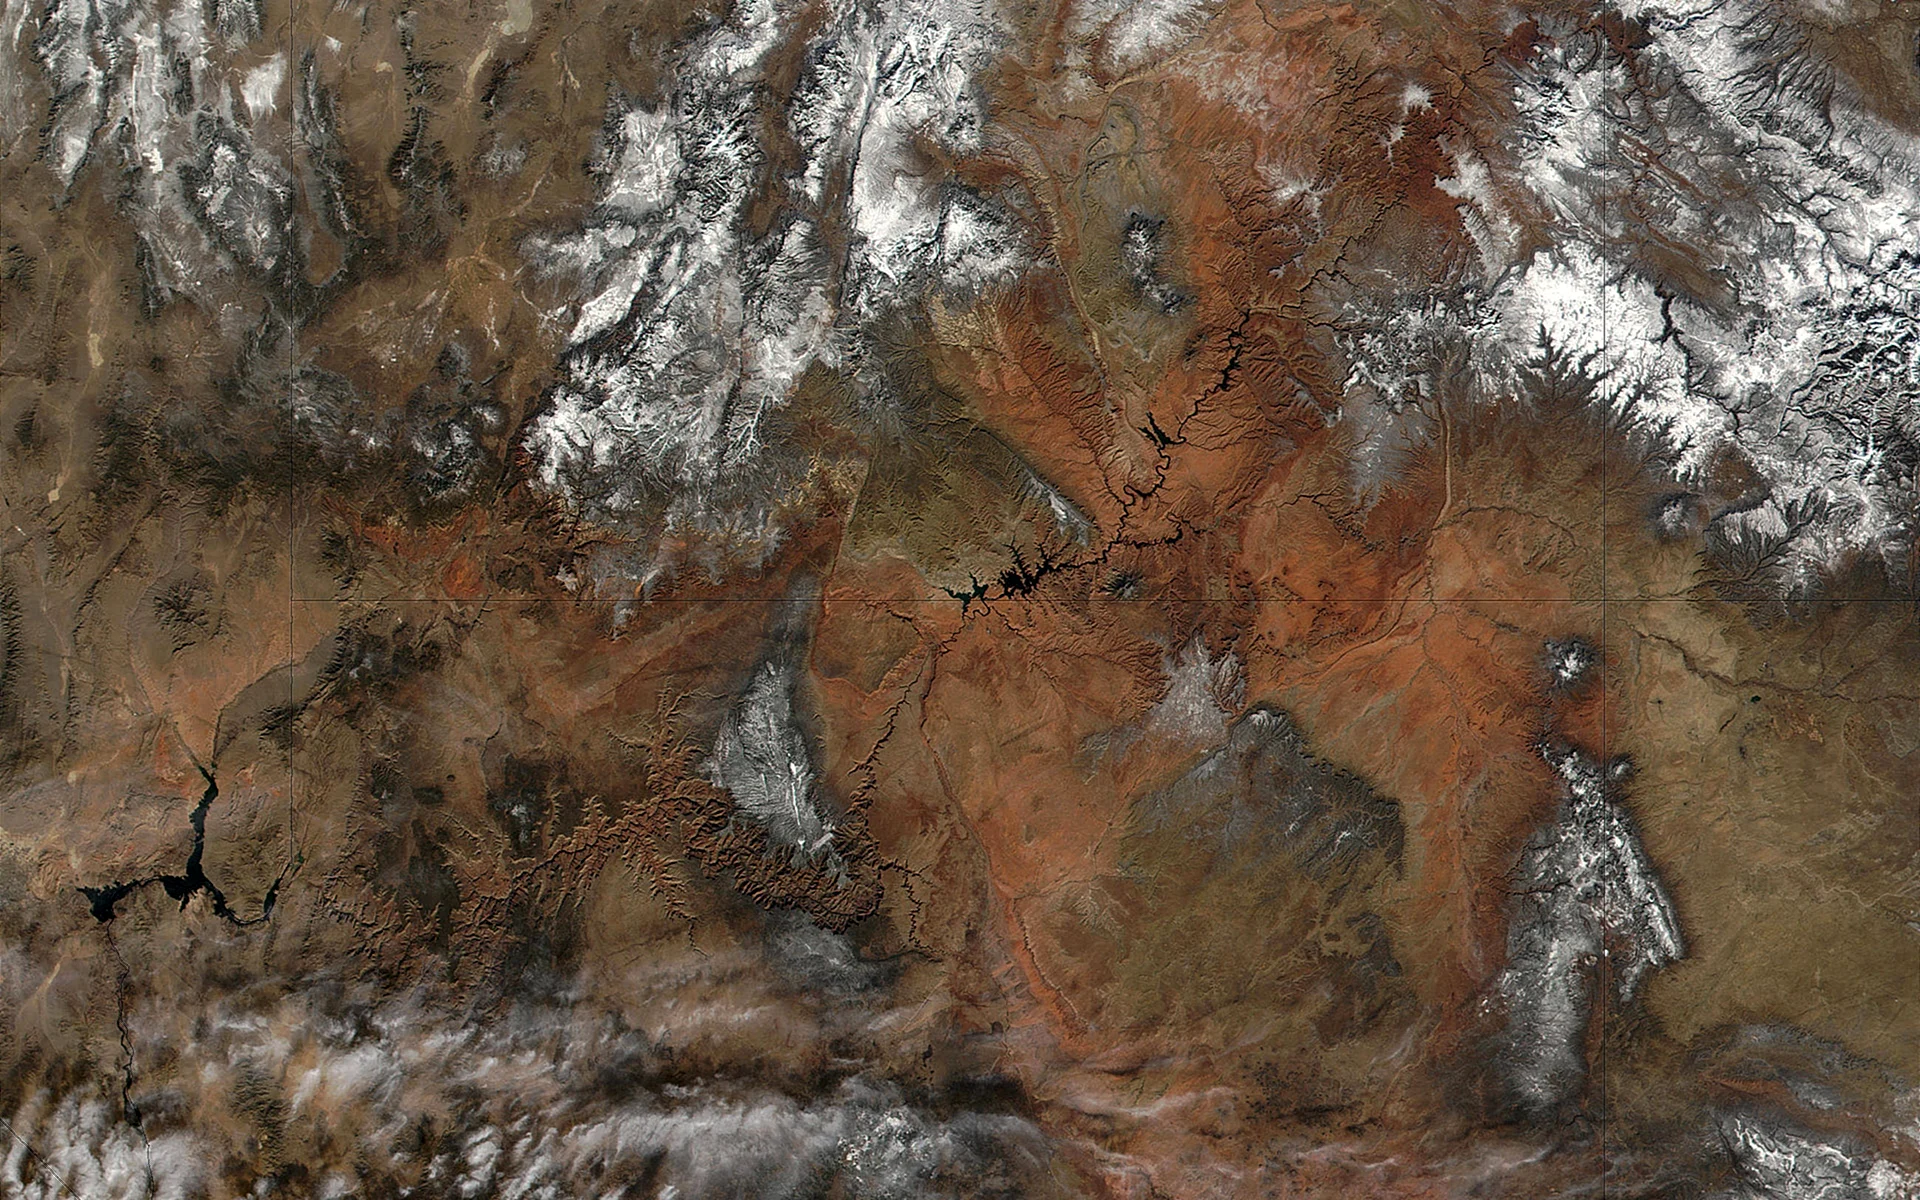 Гранд каньон со спутника